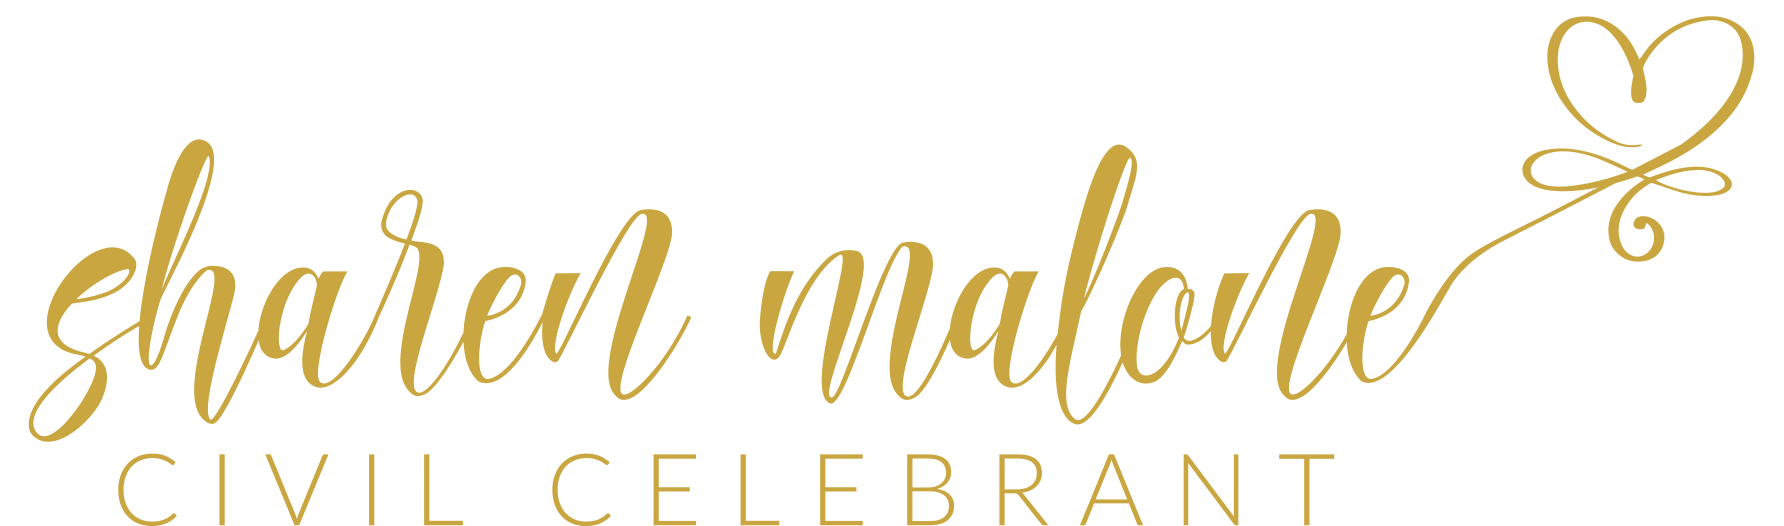 Sharen Malone Adelaide Celebrant